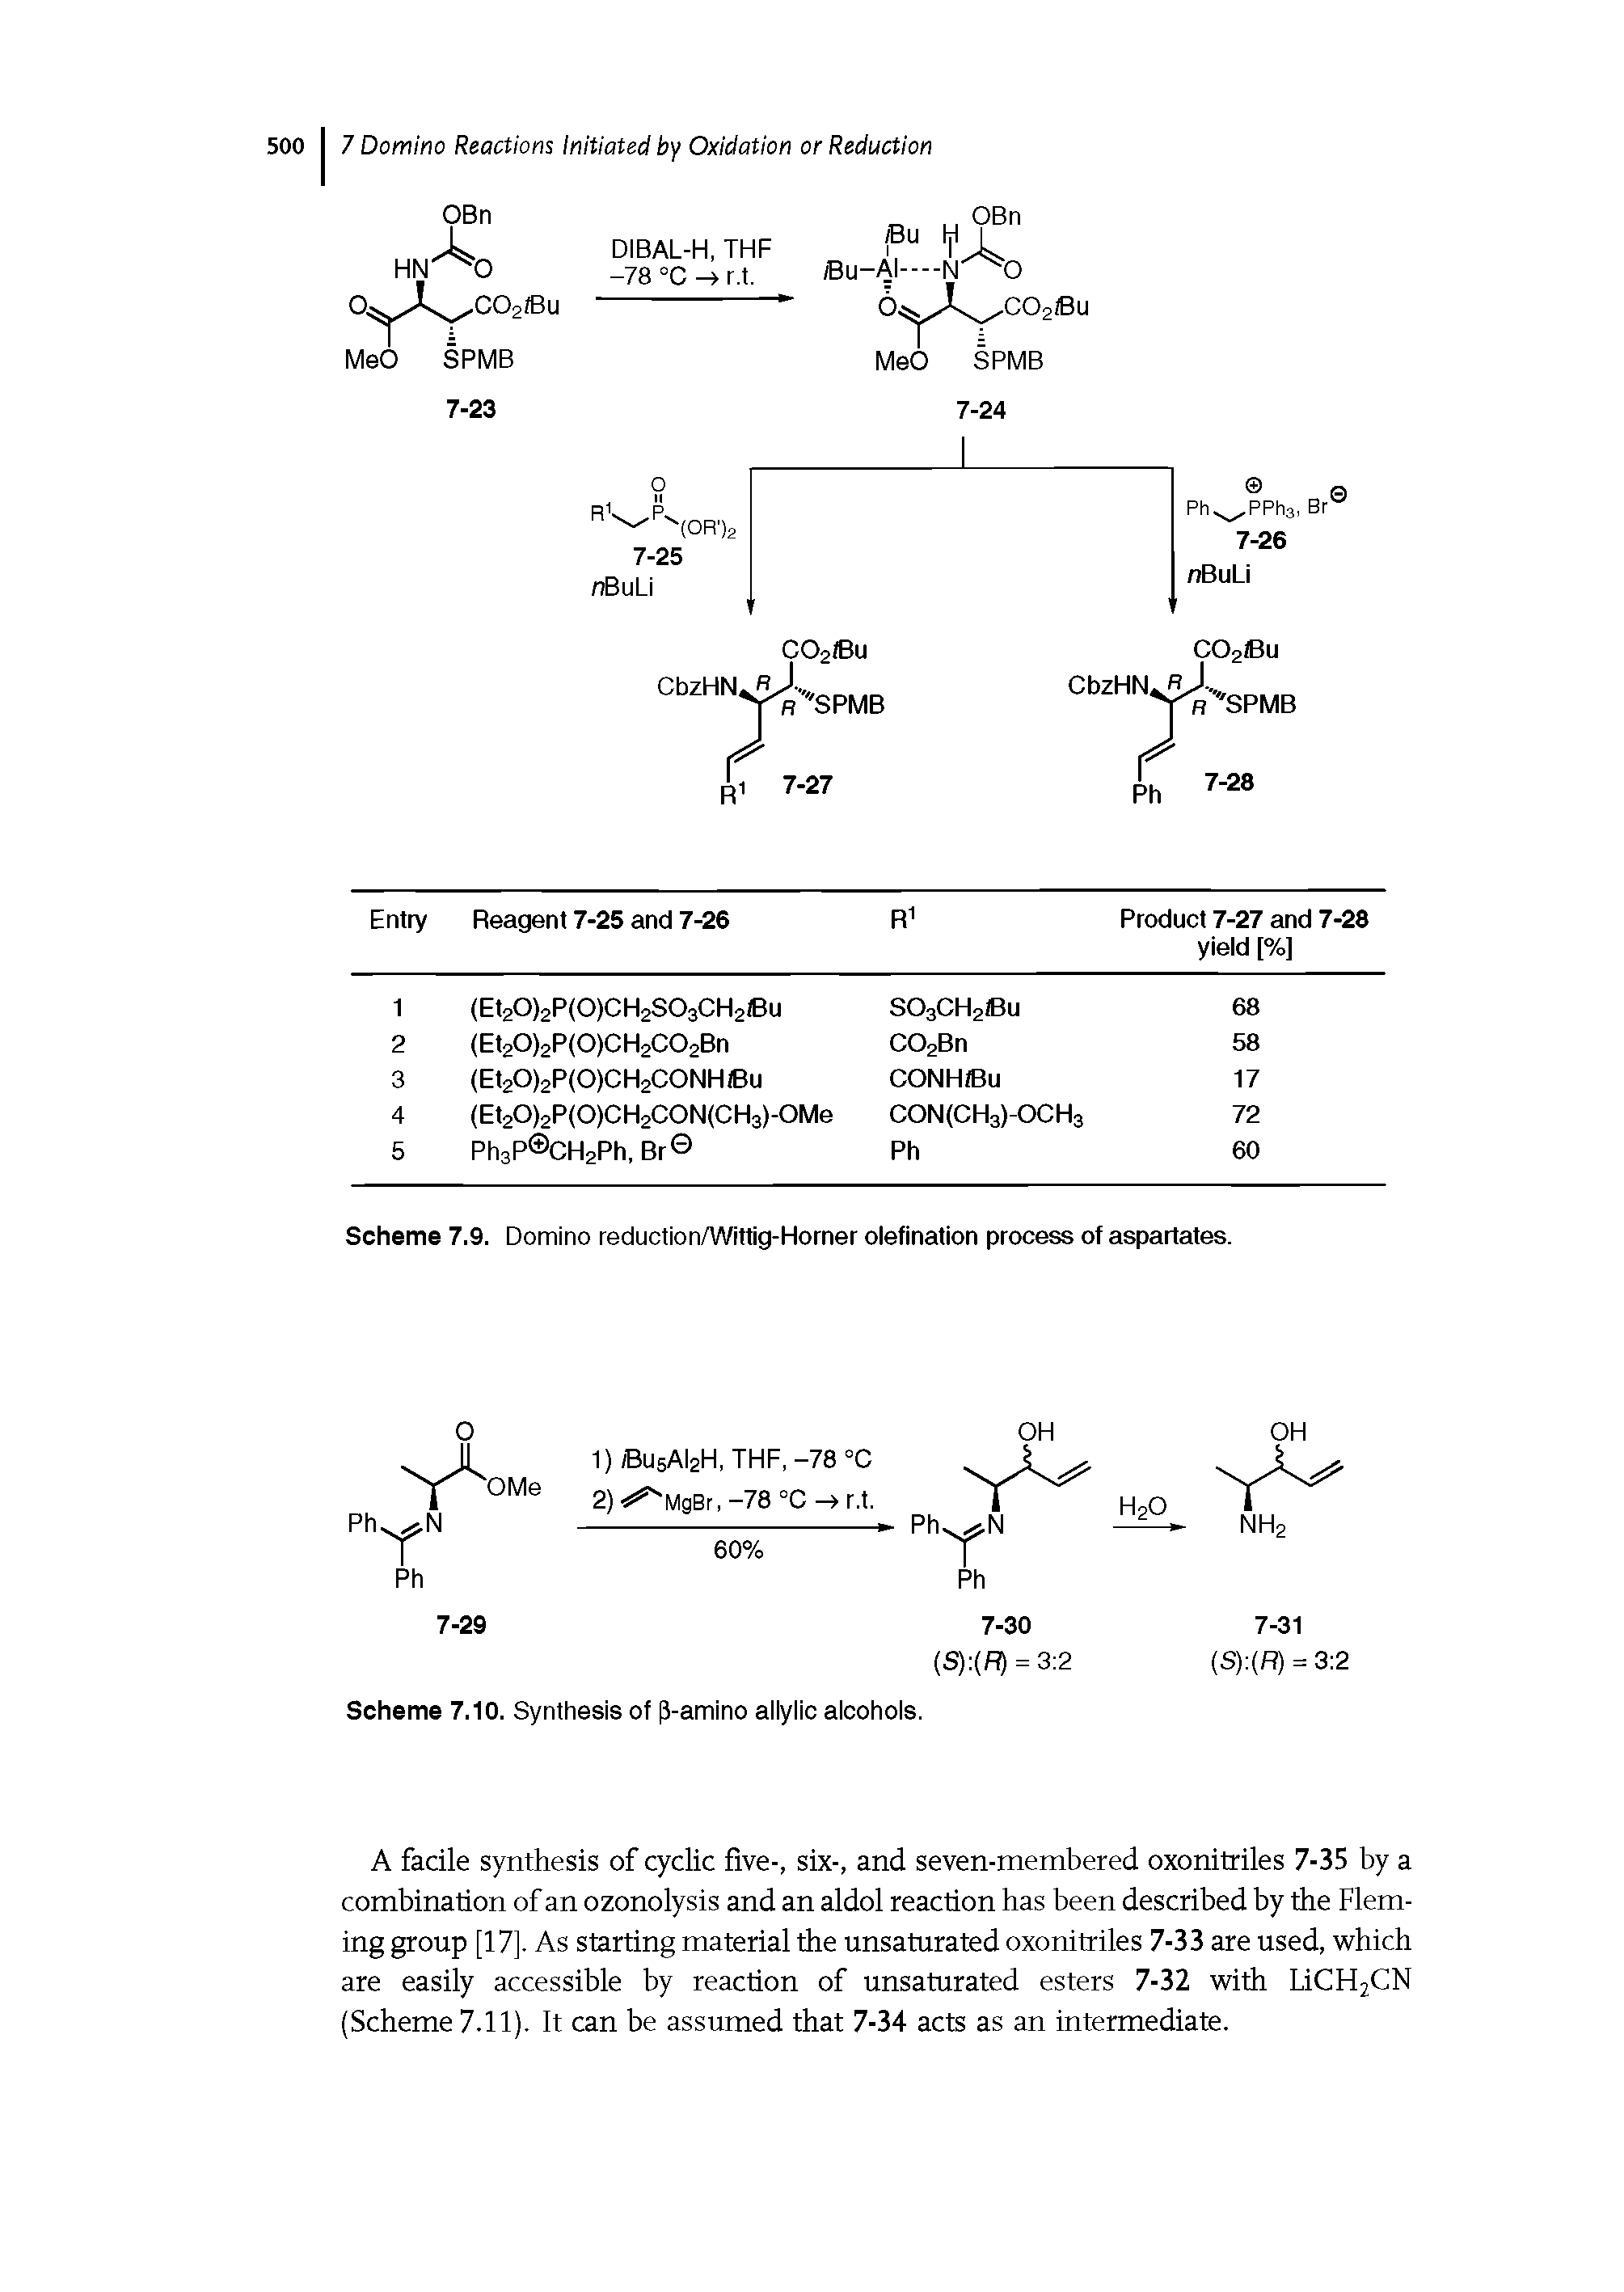 Scheme 7.9. Domino reduction/Wittig-Horner olefination process of aspartates.